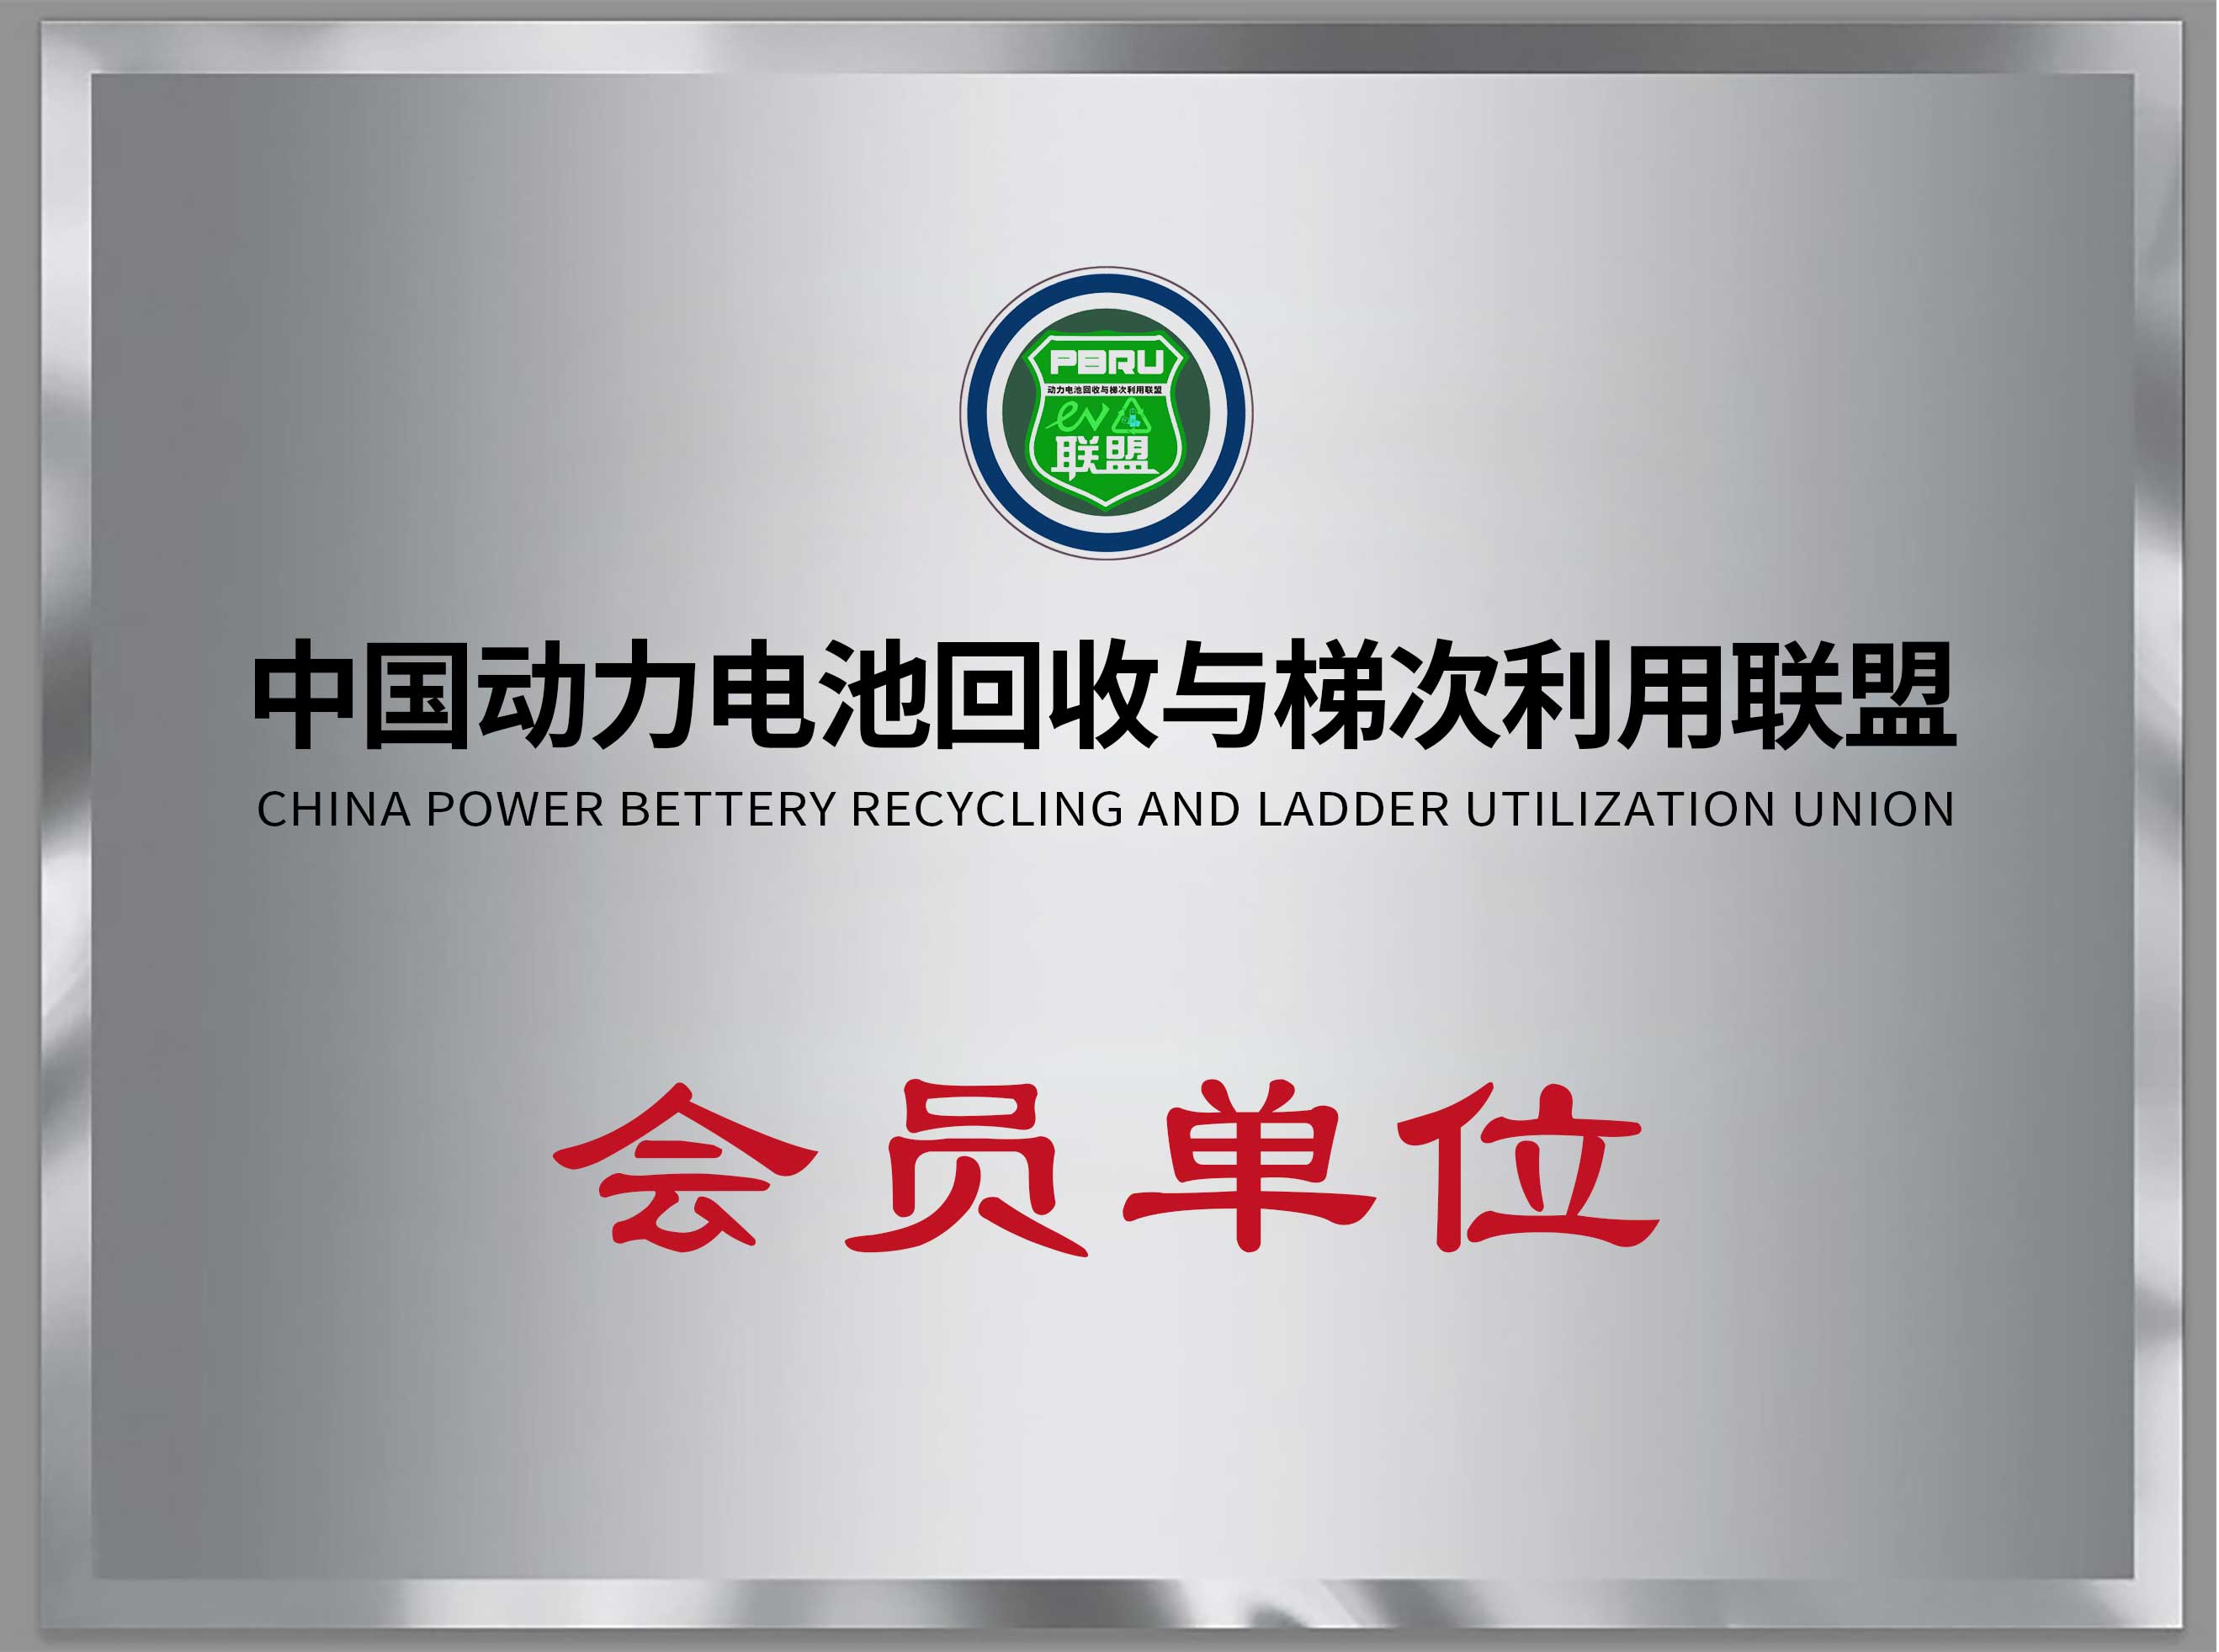 中国动力电池回收与梯次利用联盟会员单位